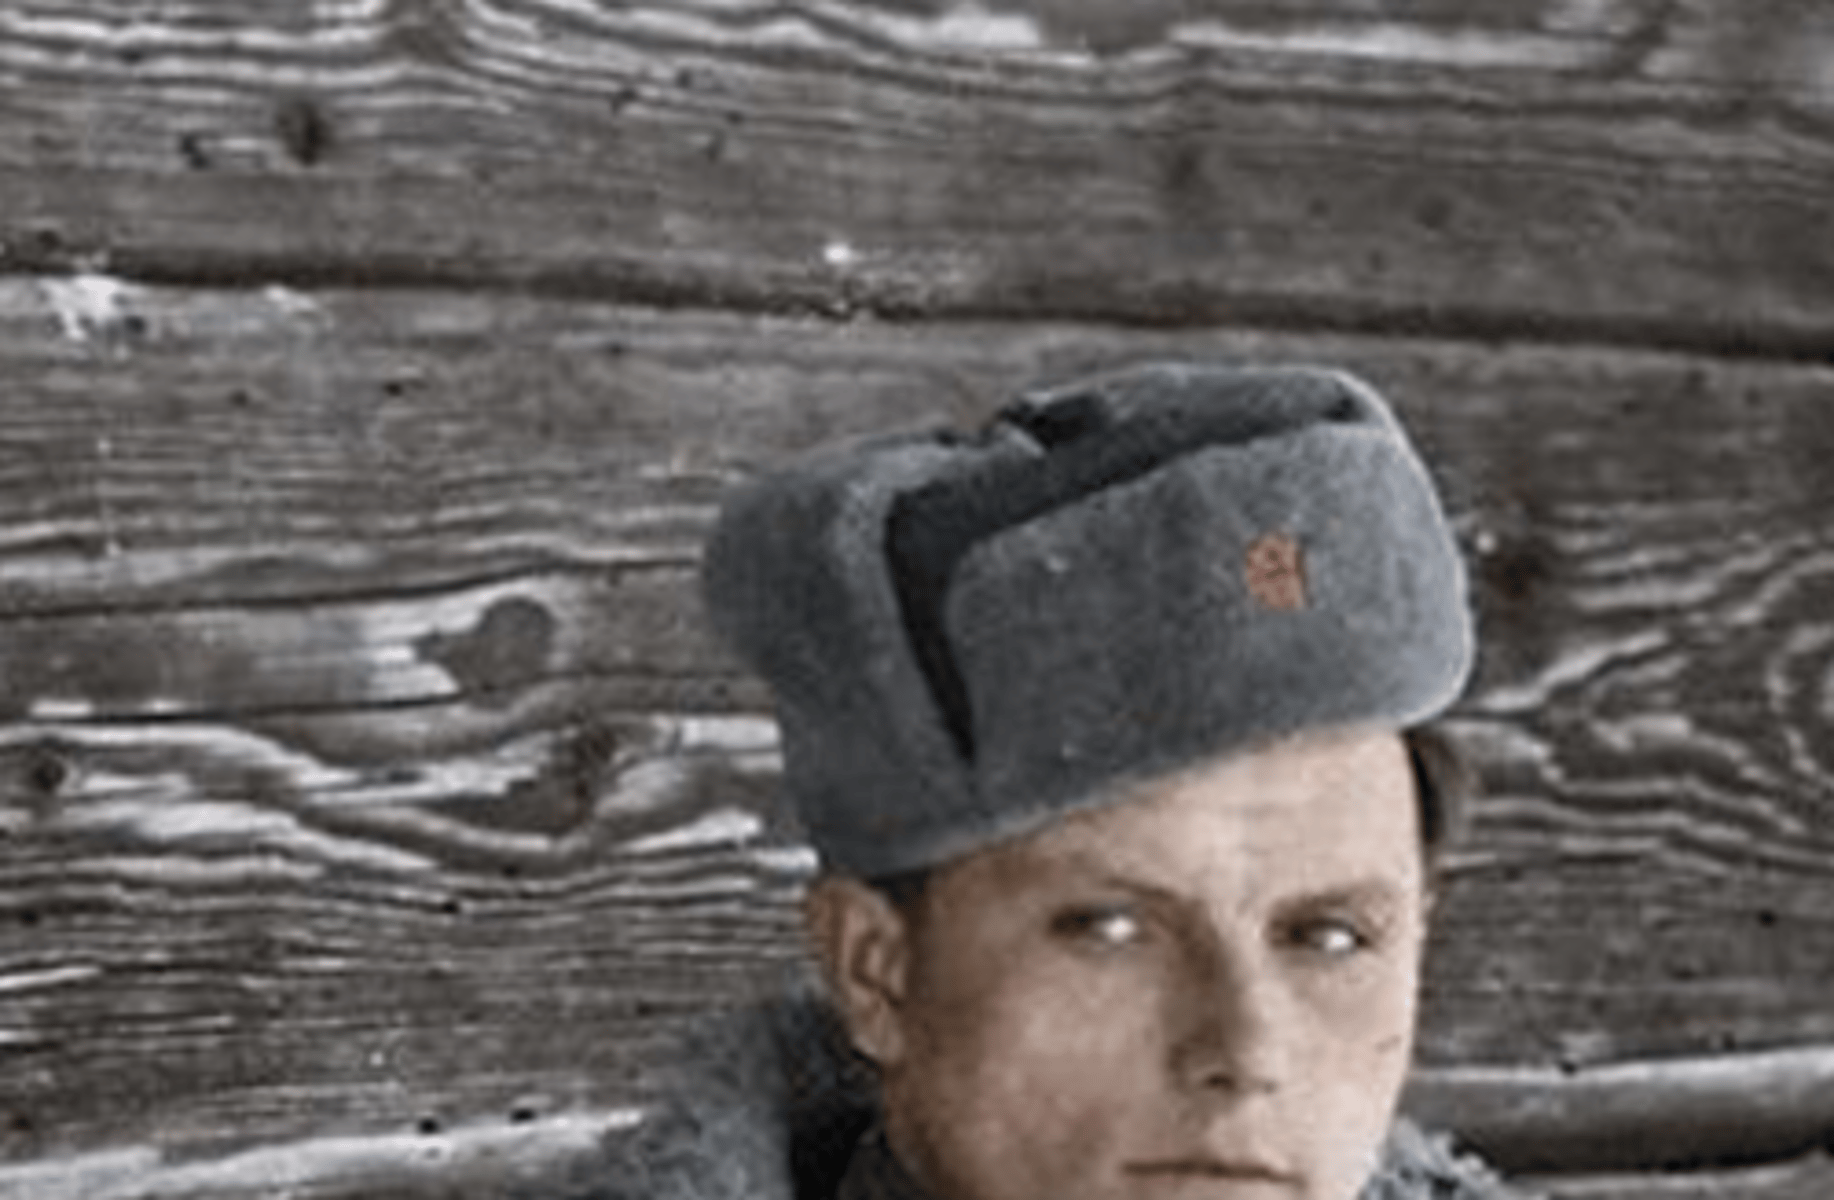 Soviet solider